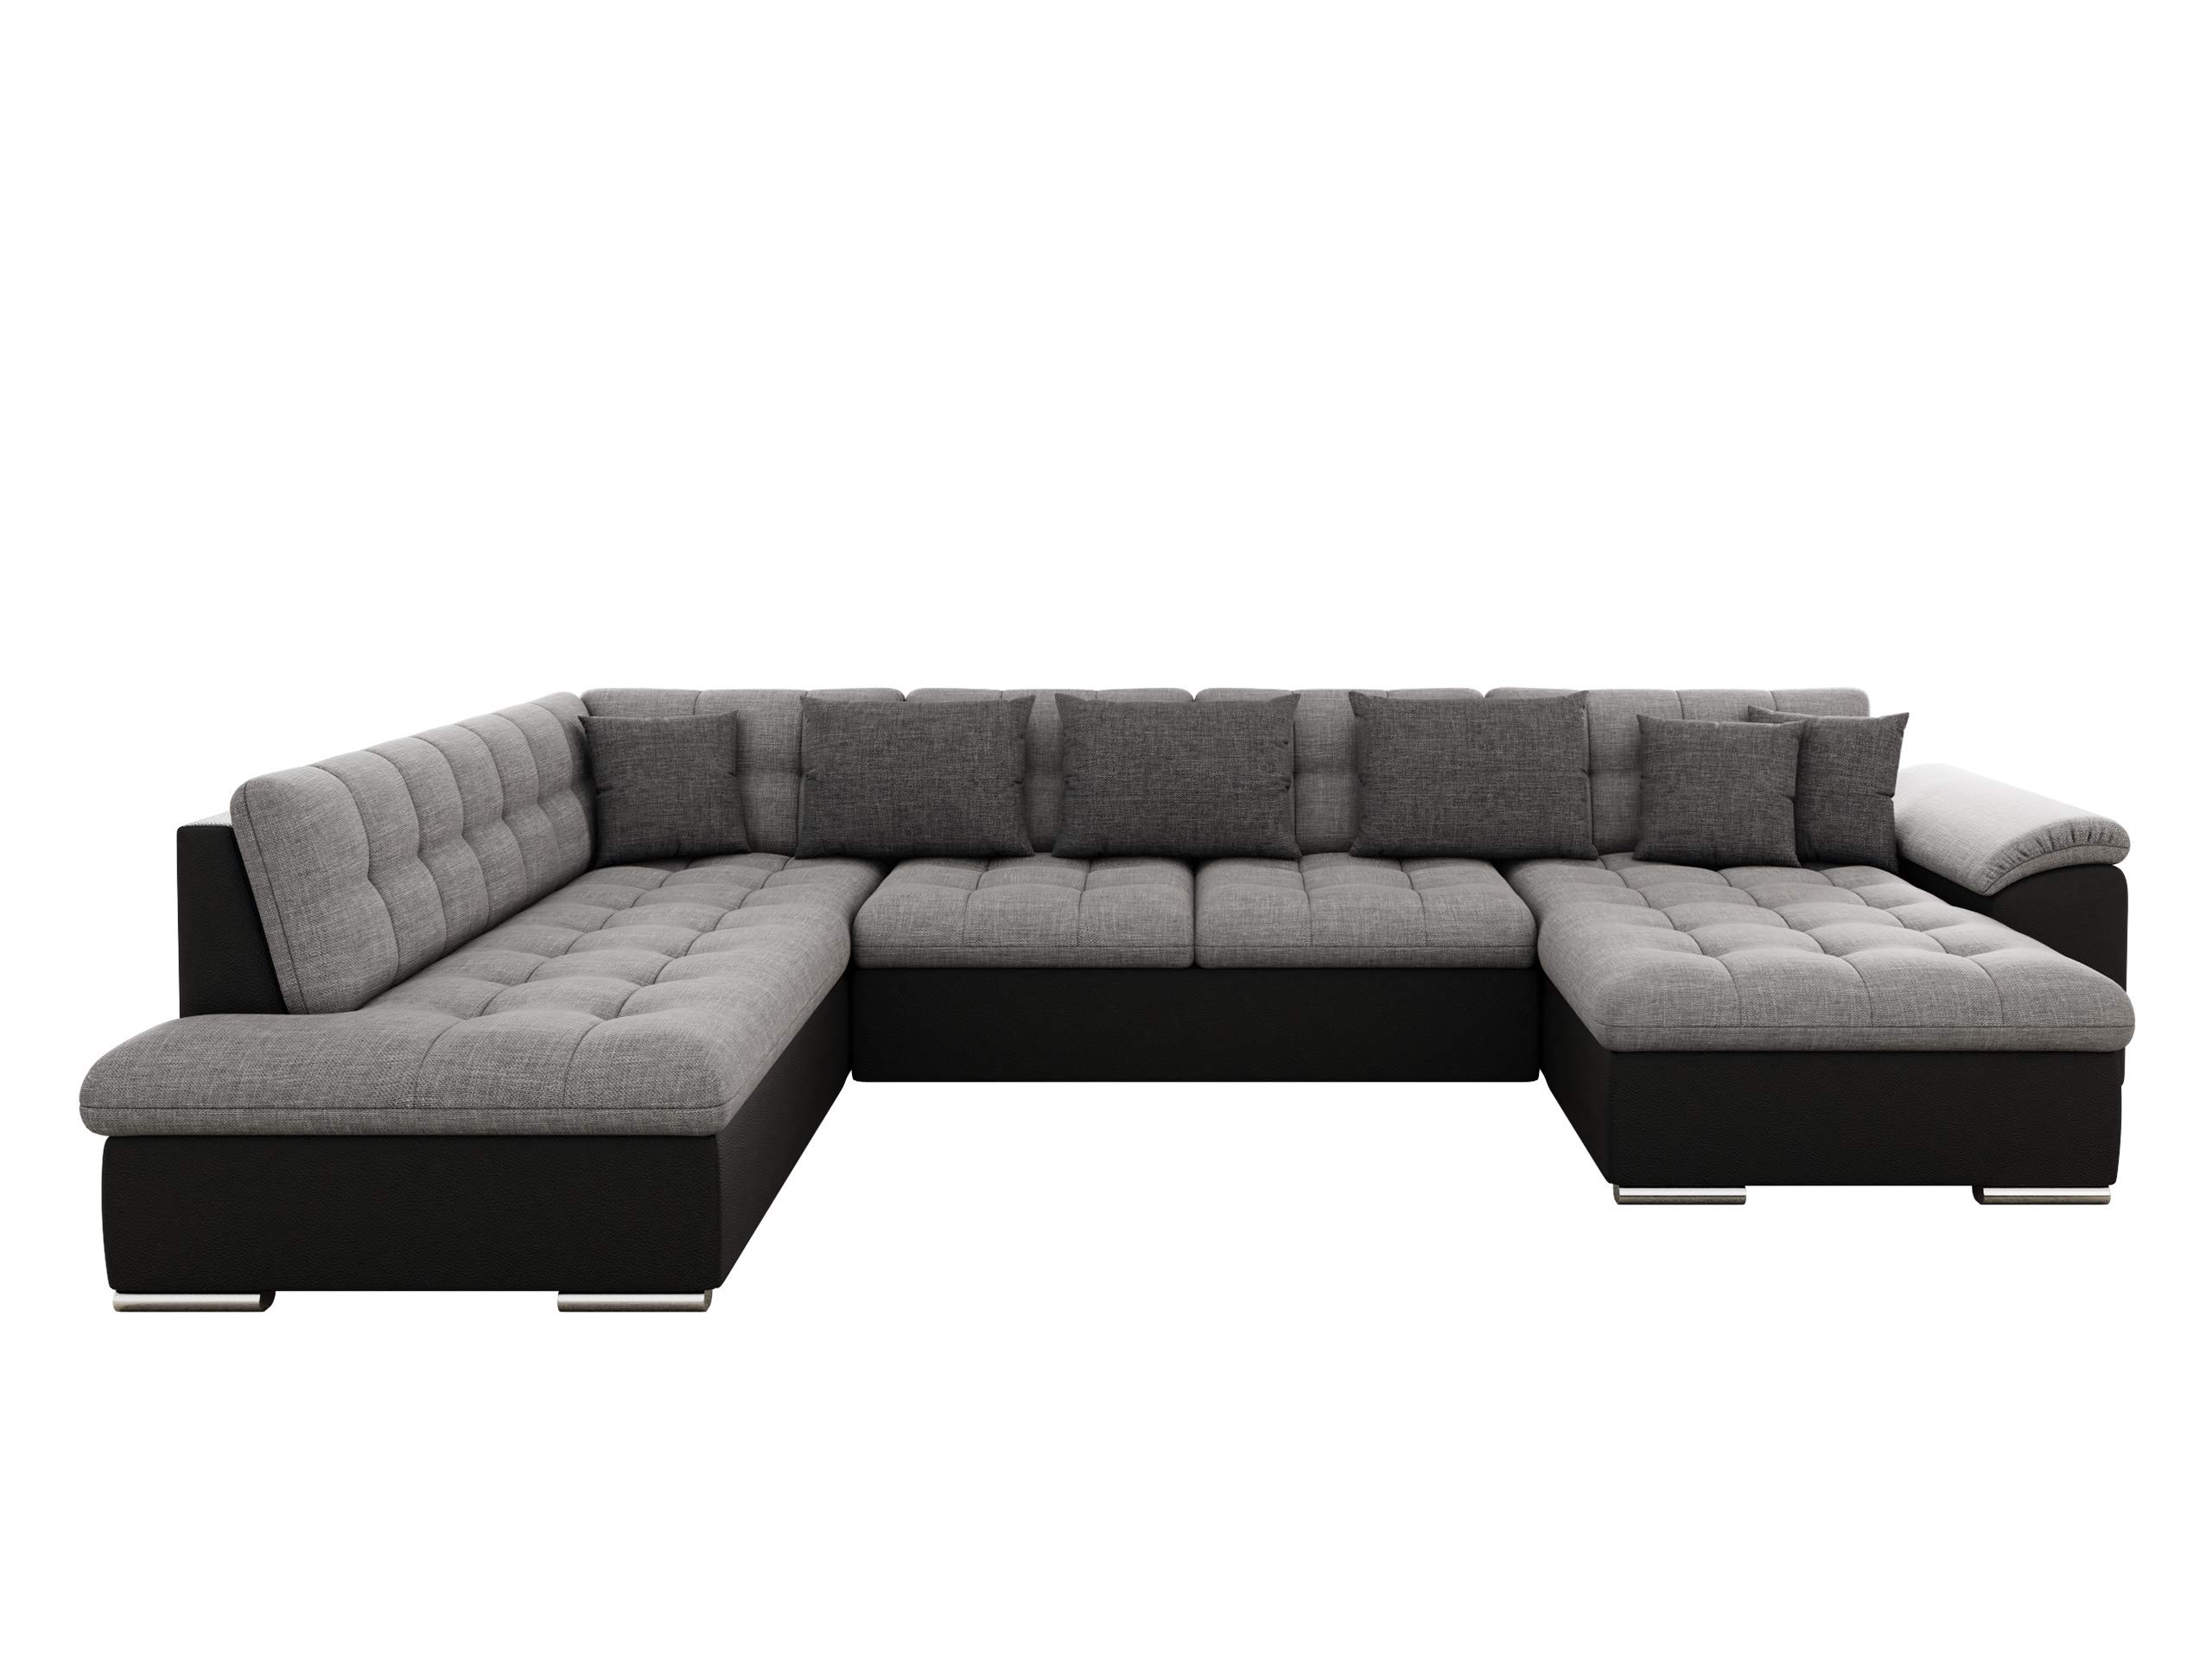 Mirjan24 Eckcouch Ecksofa Niko Bis, Design Sofa Couch mit Schlaffunktion und Bettkasten U-Sofa Farbauswahl Wohnlandschaft vom Hersteller (Ecksofa Rechts, Soft 011 + Lux 05 + Lux 06)